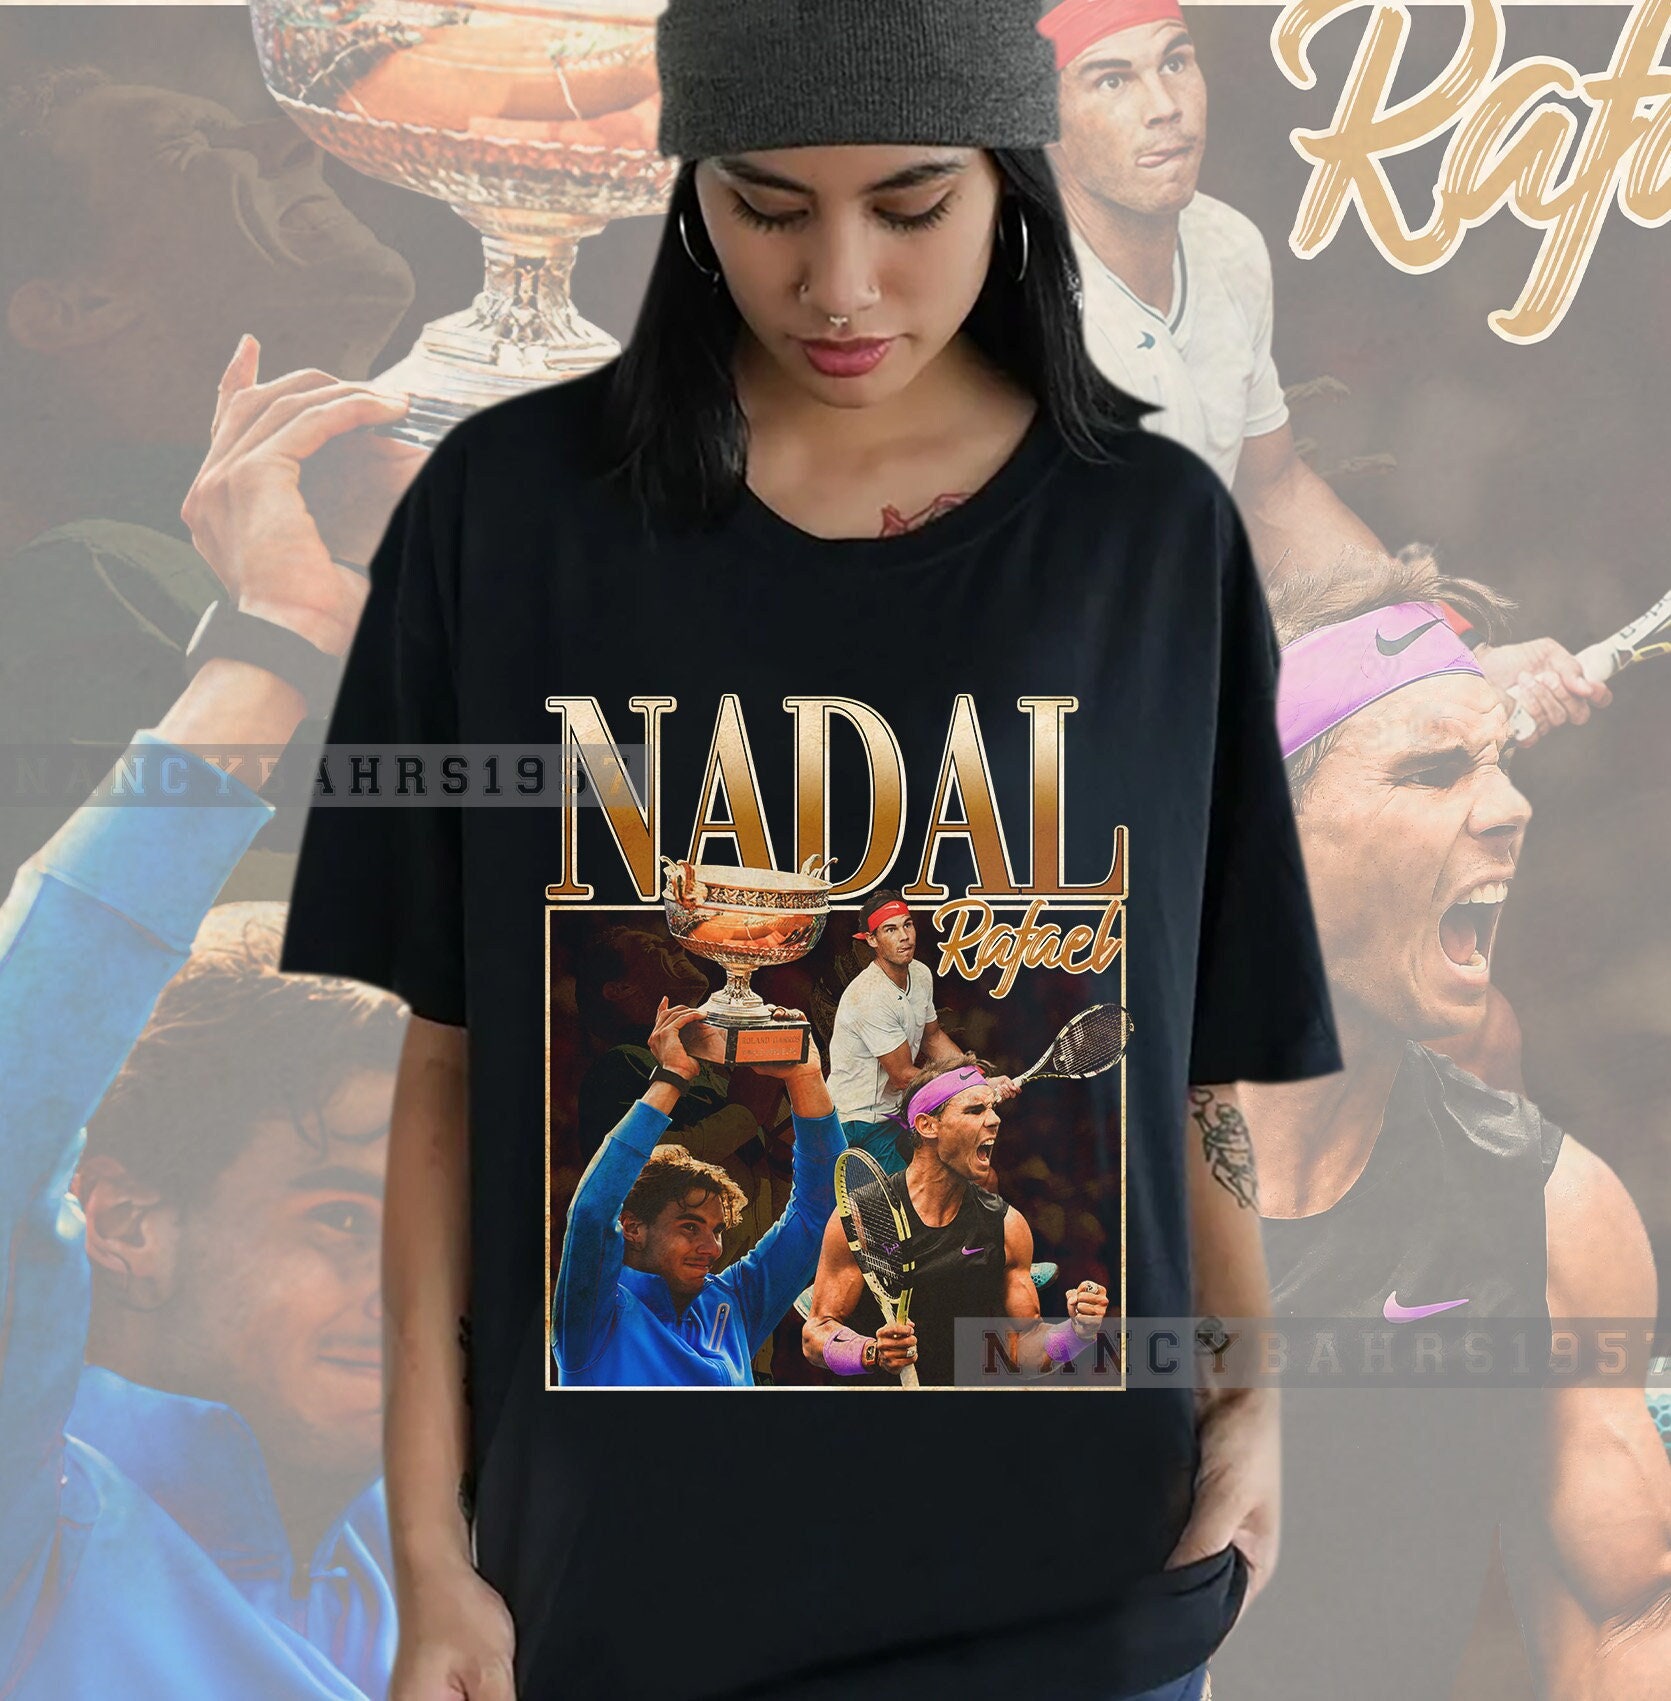 Discover Legendäre Tennisspieler Rafael Nadal T-Shirt